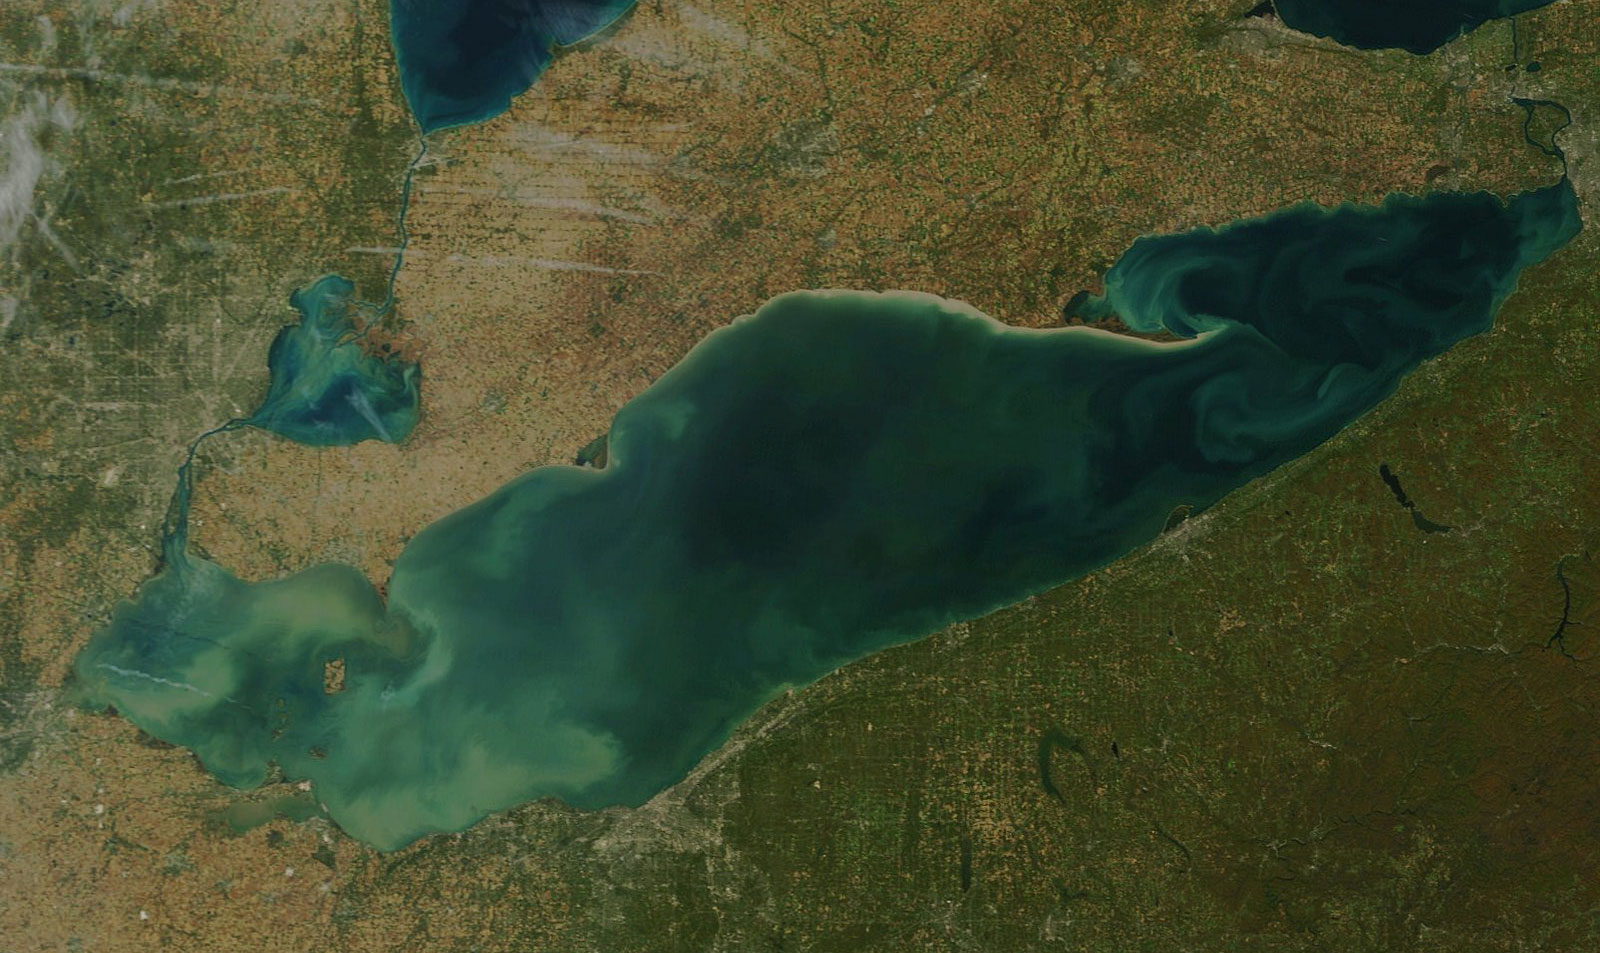 Algae in Lake Erie in 2015